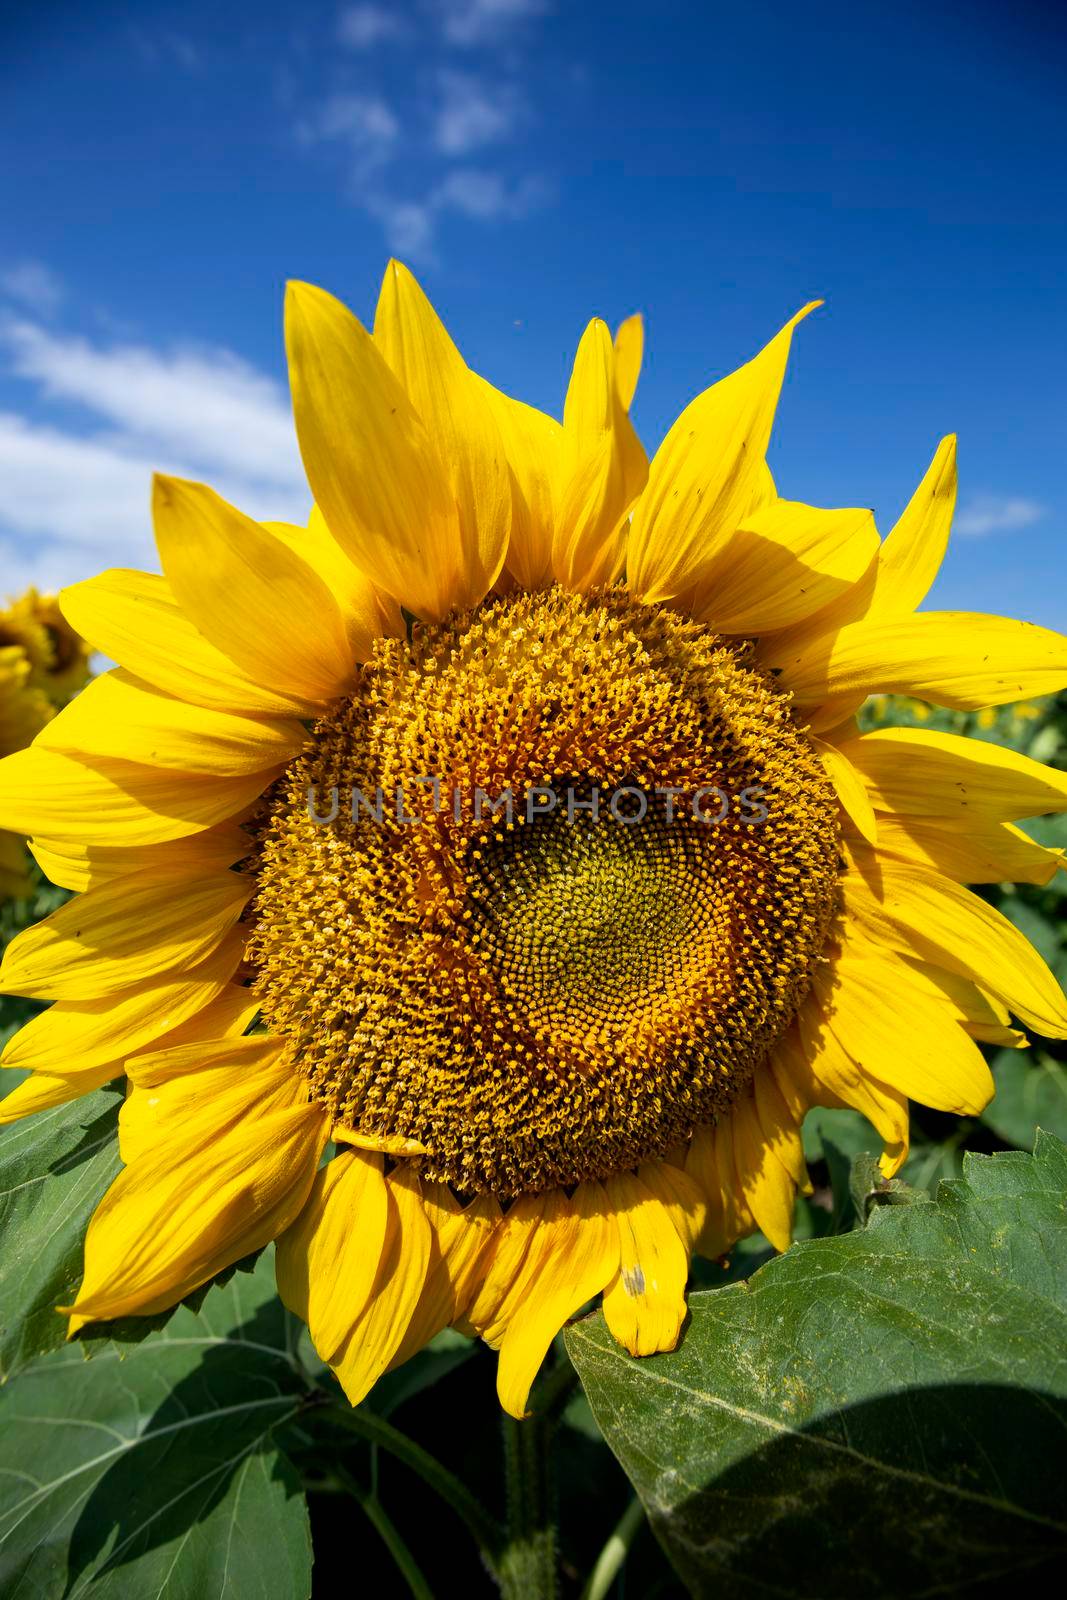 Prairie Sunflower Field by pictureguy